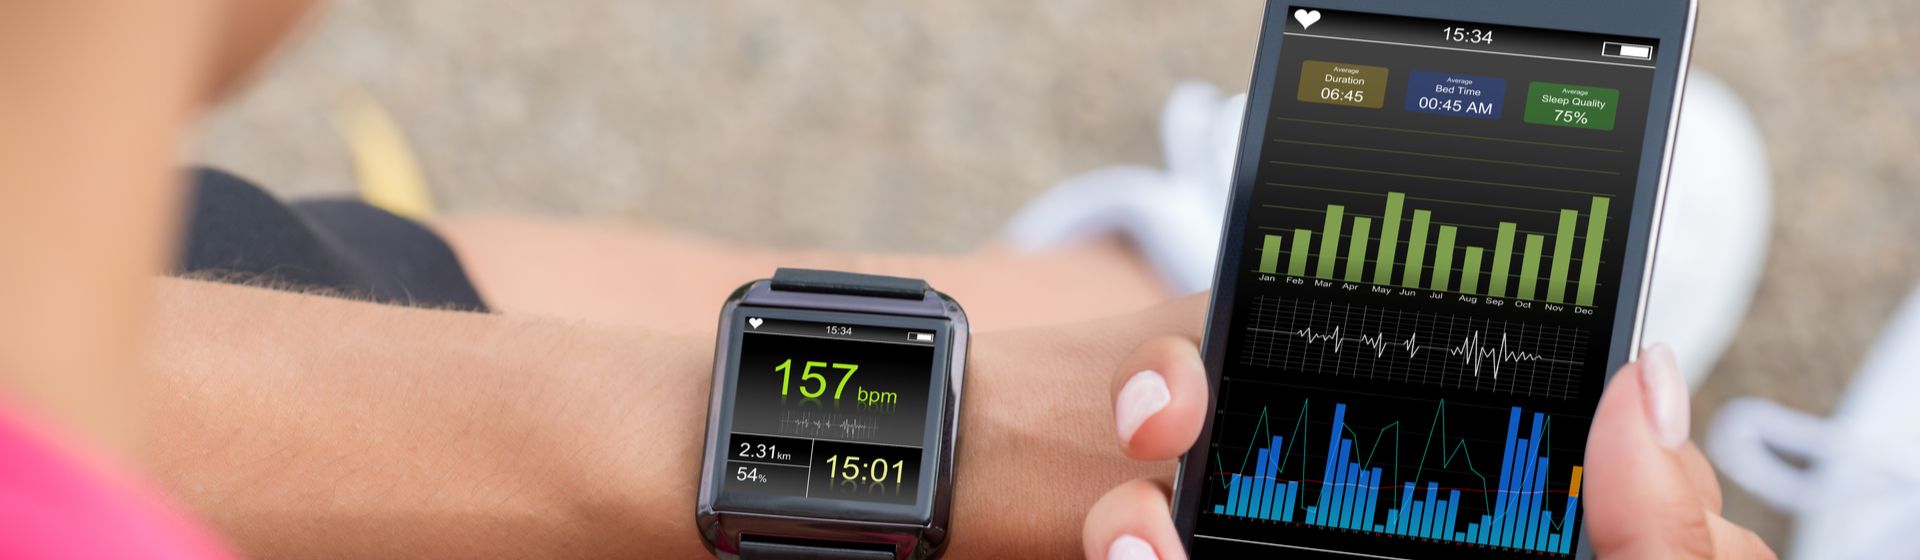 Relógio inteligente no pulso de homem segurando celular, ensinando como configurar smartwatch